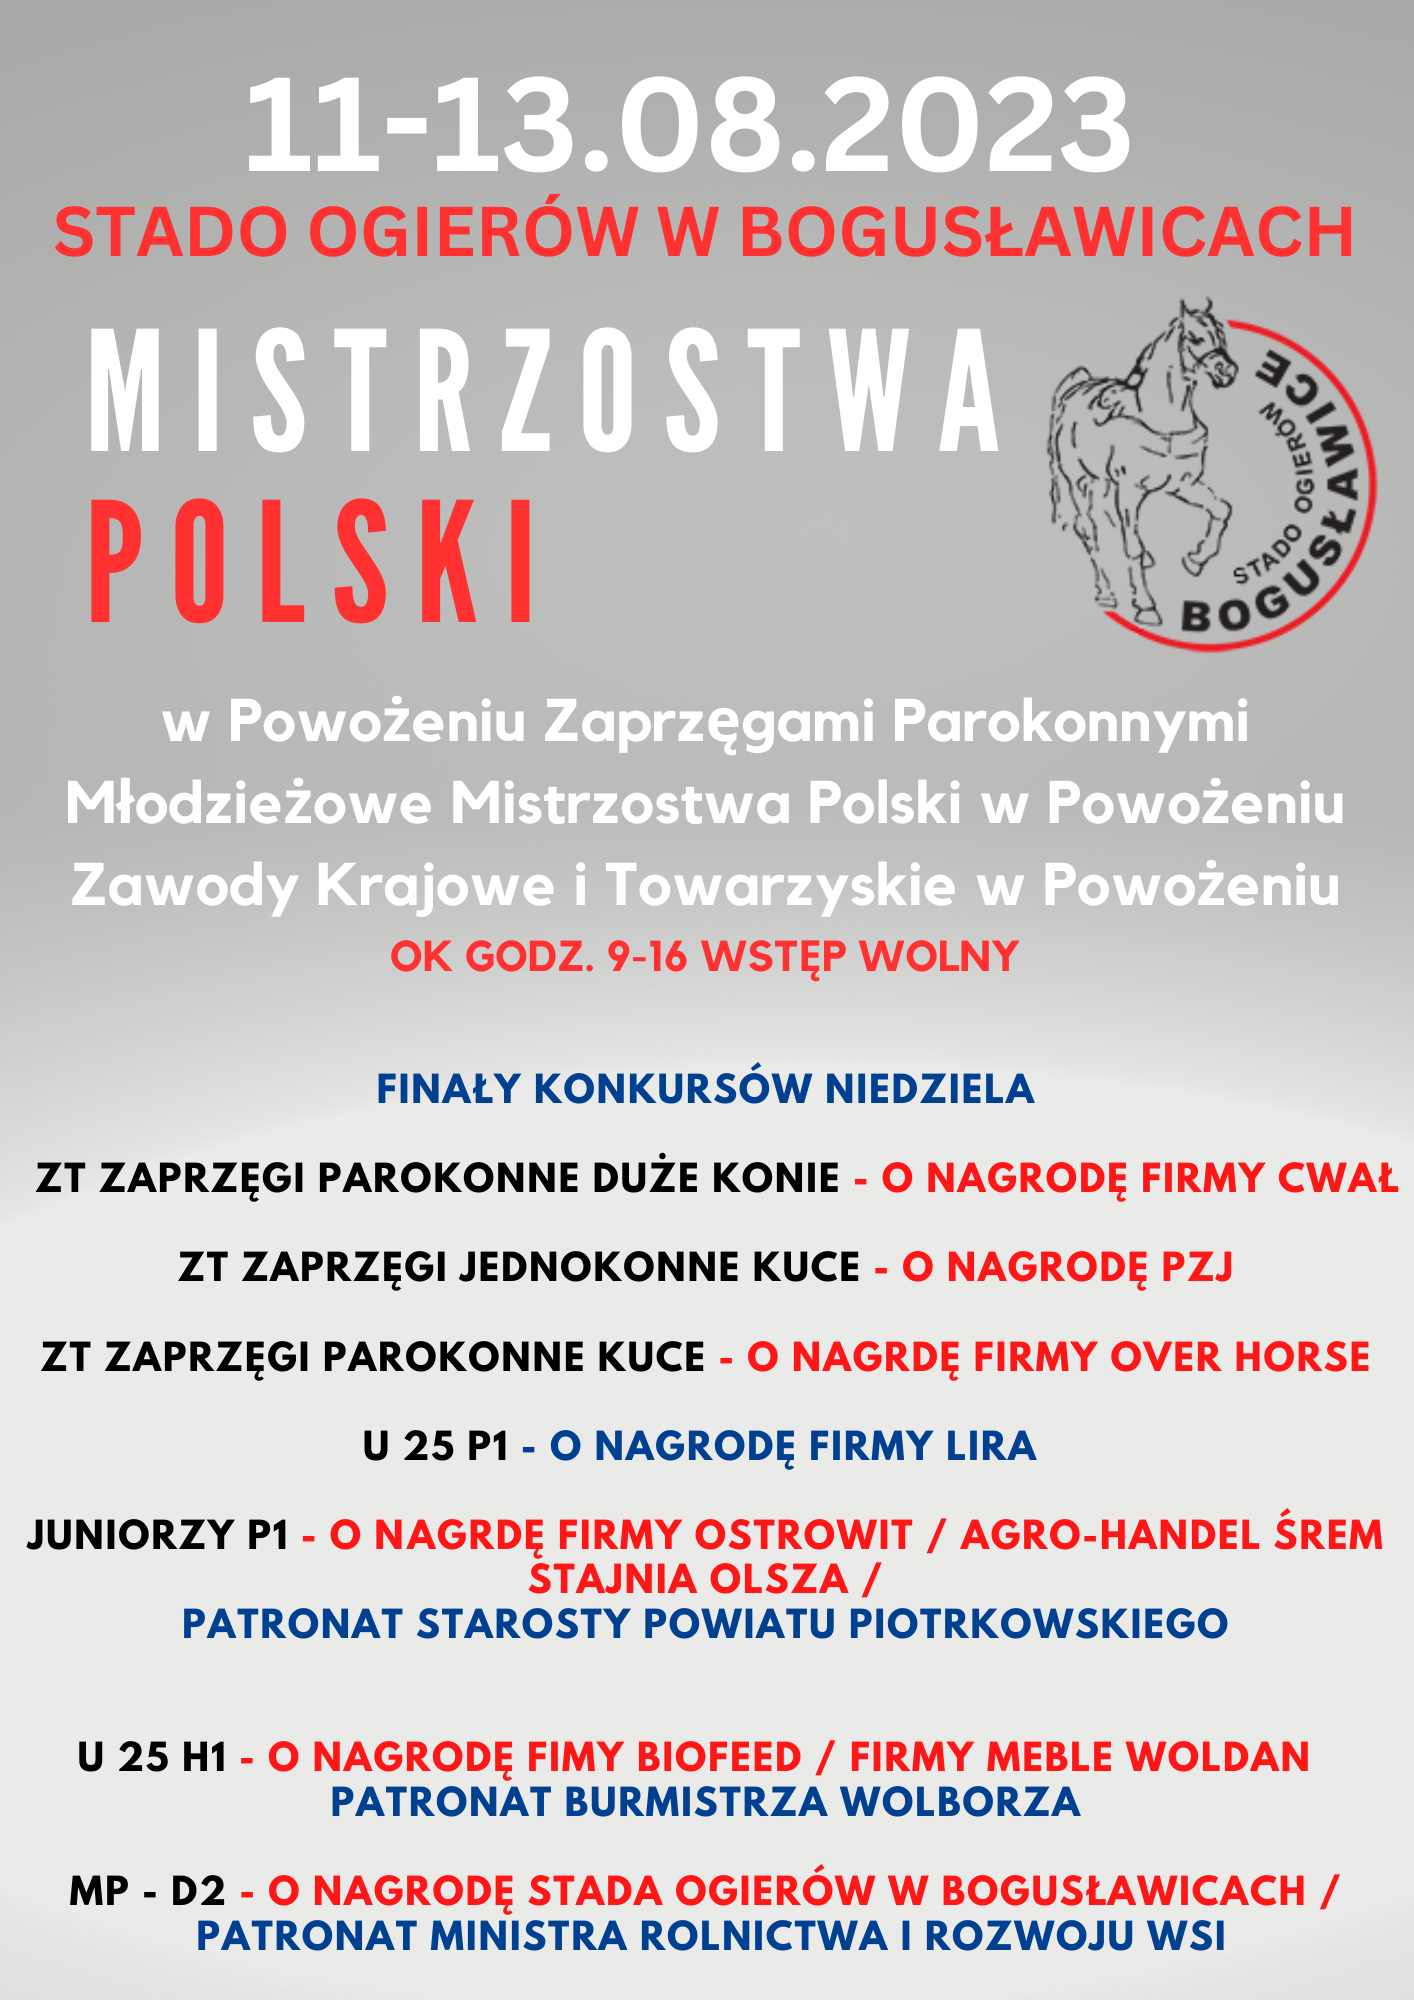 Mistrzostwa Polski w Powoeniu w Bogusawicach